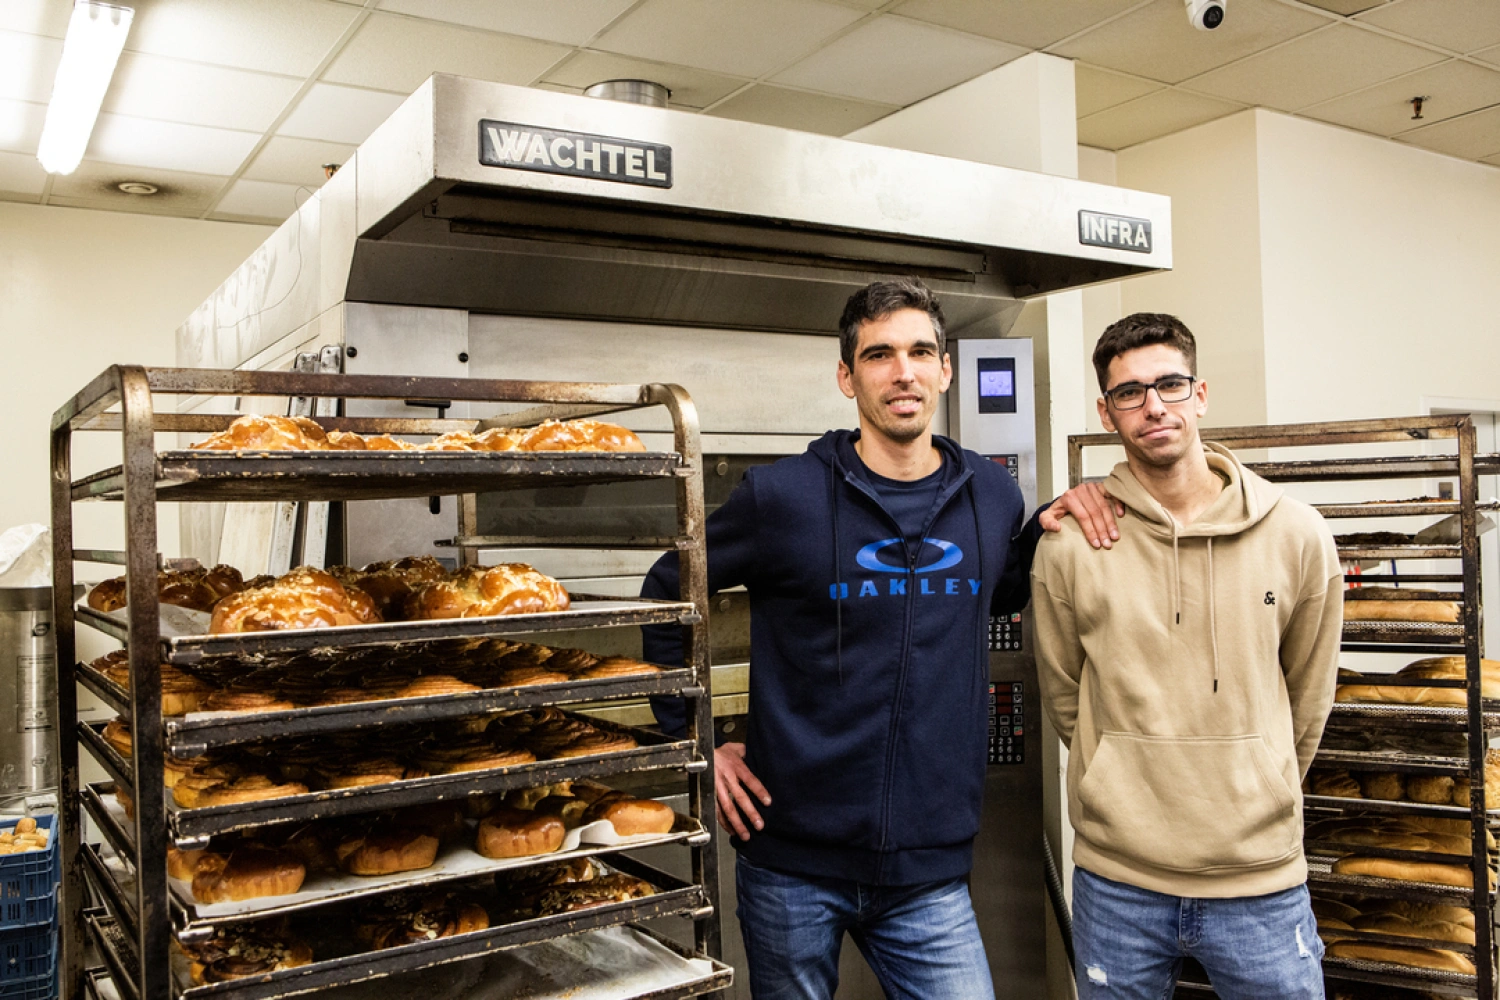 Bratia založili remeselnú pekáreň. Chcú ukázať krásu poctivého pečiva